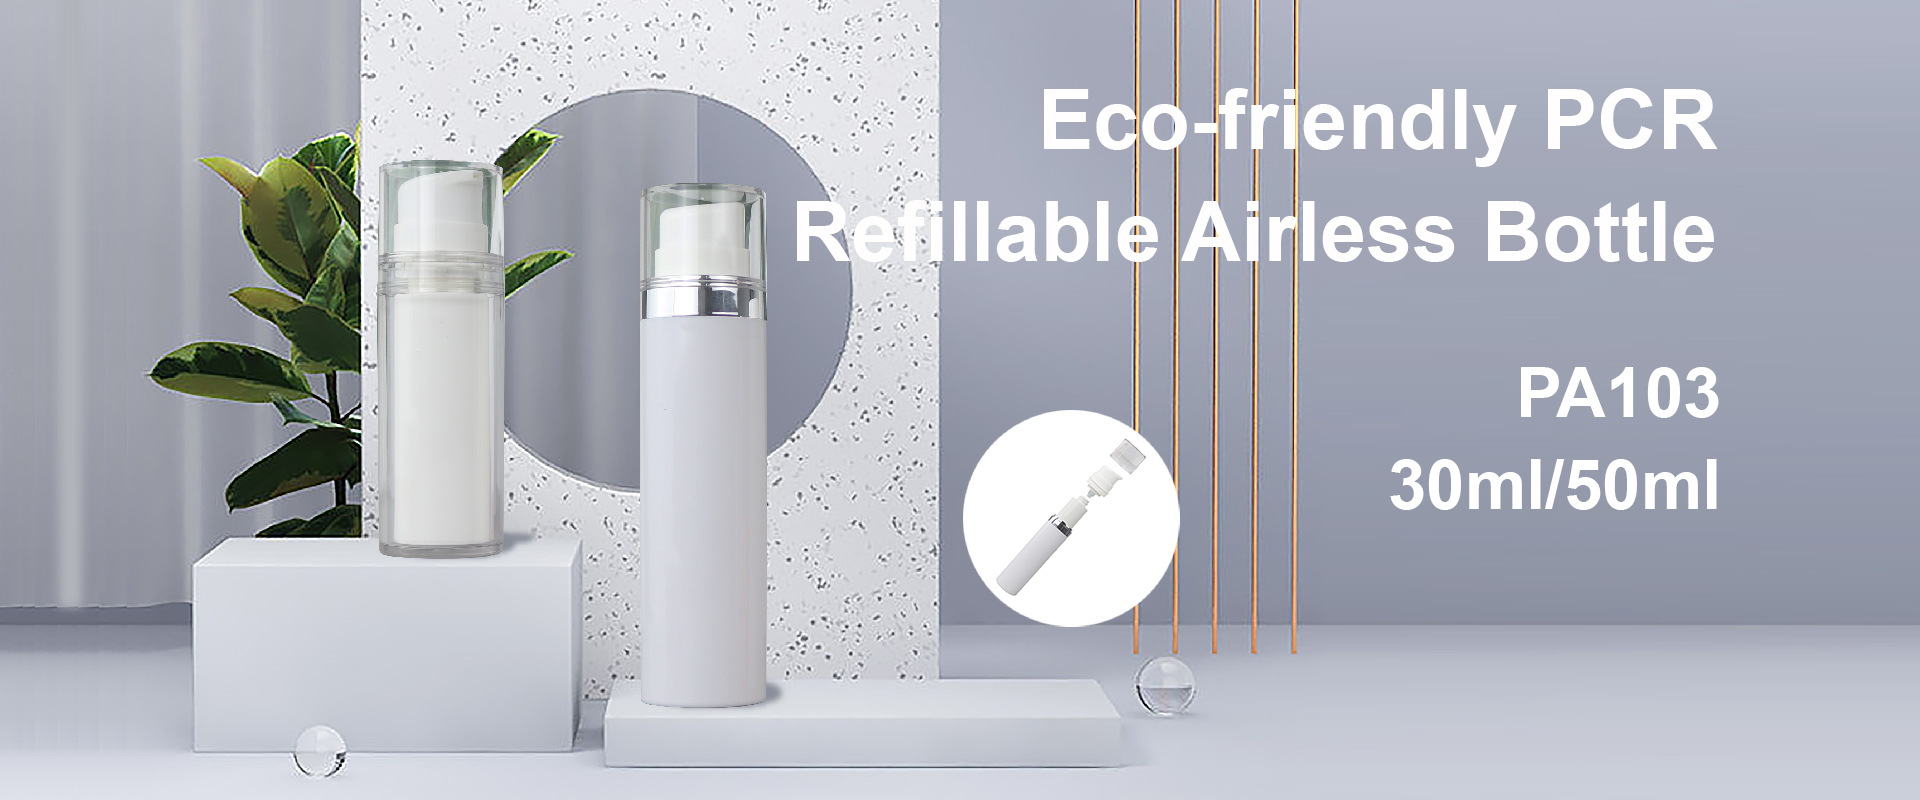 eco-friendly airless bhodhoro